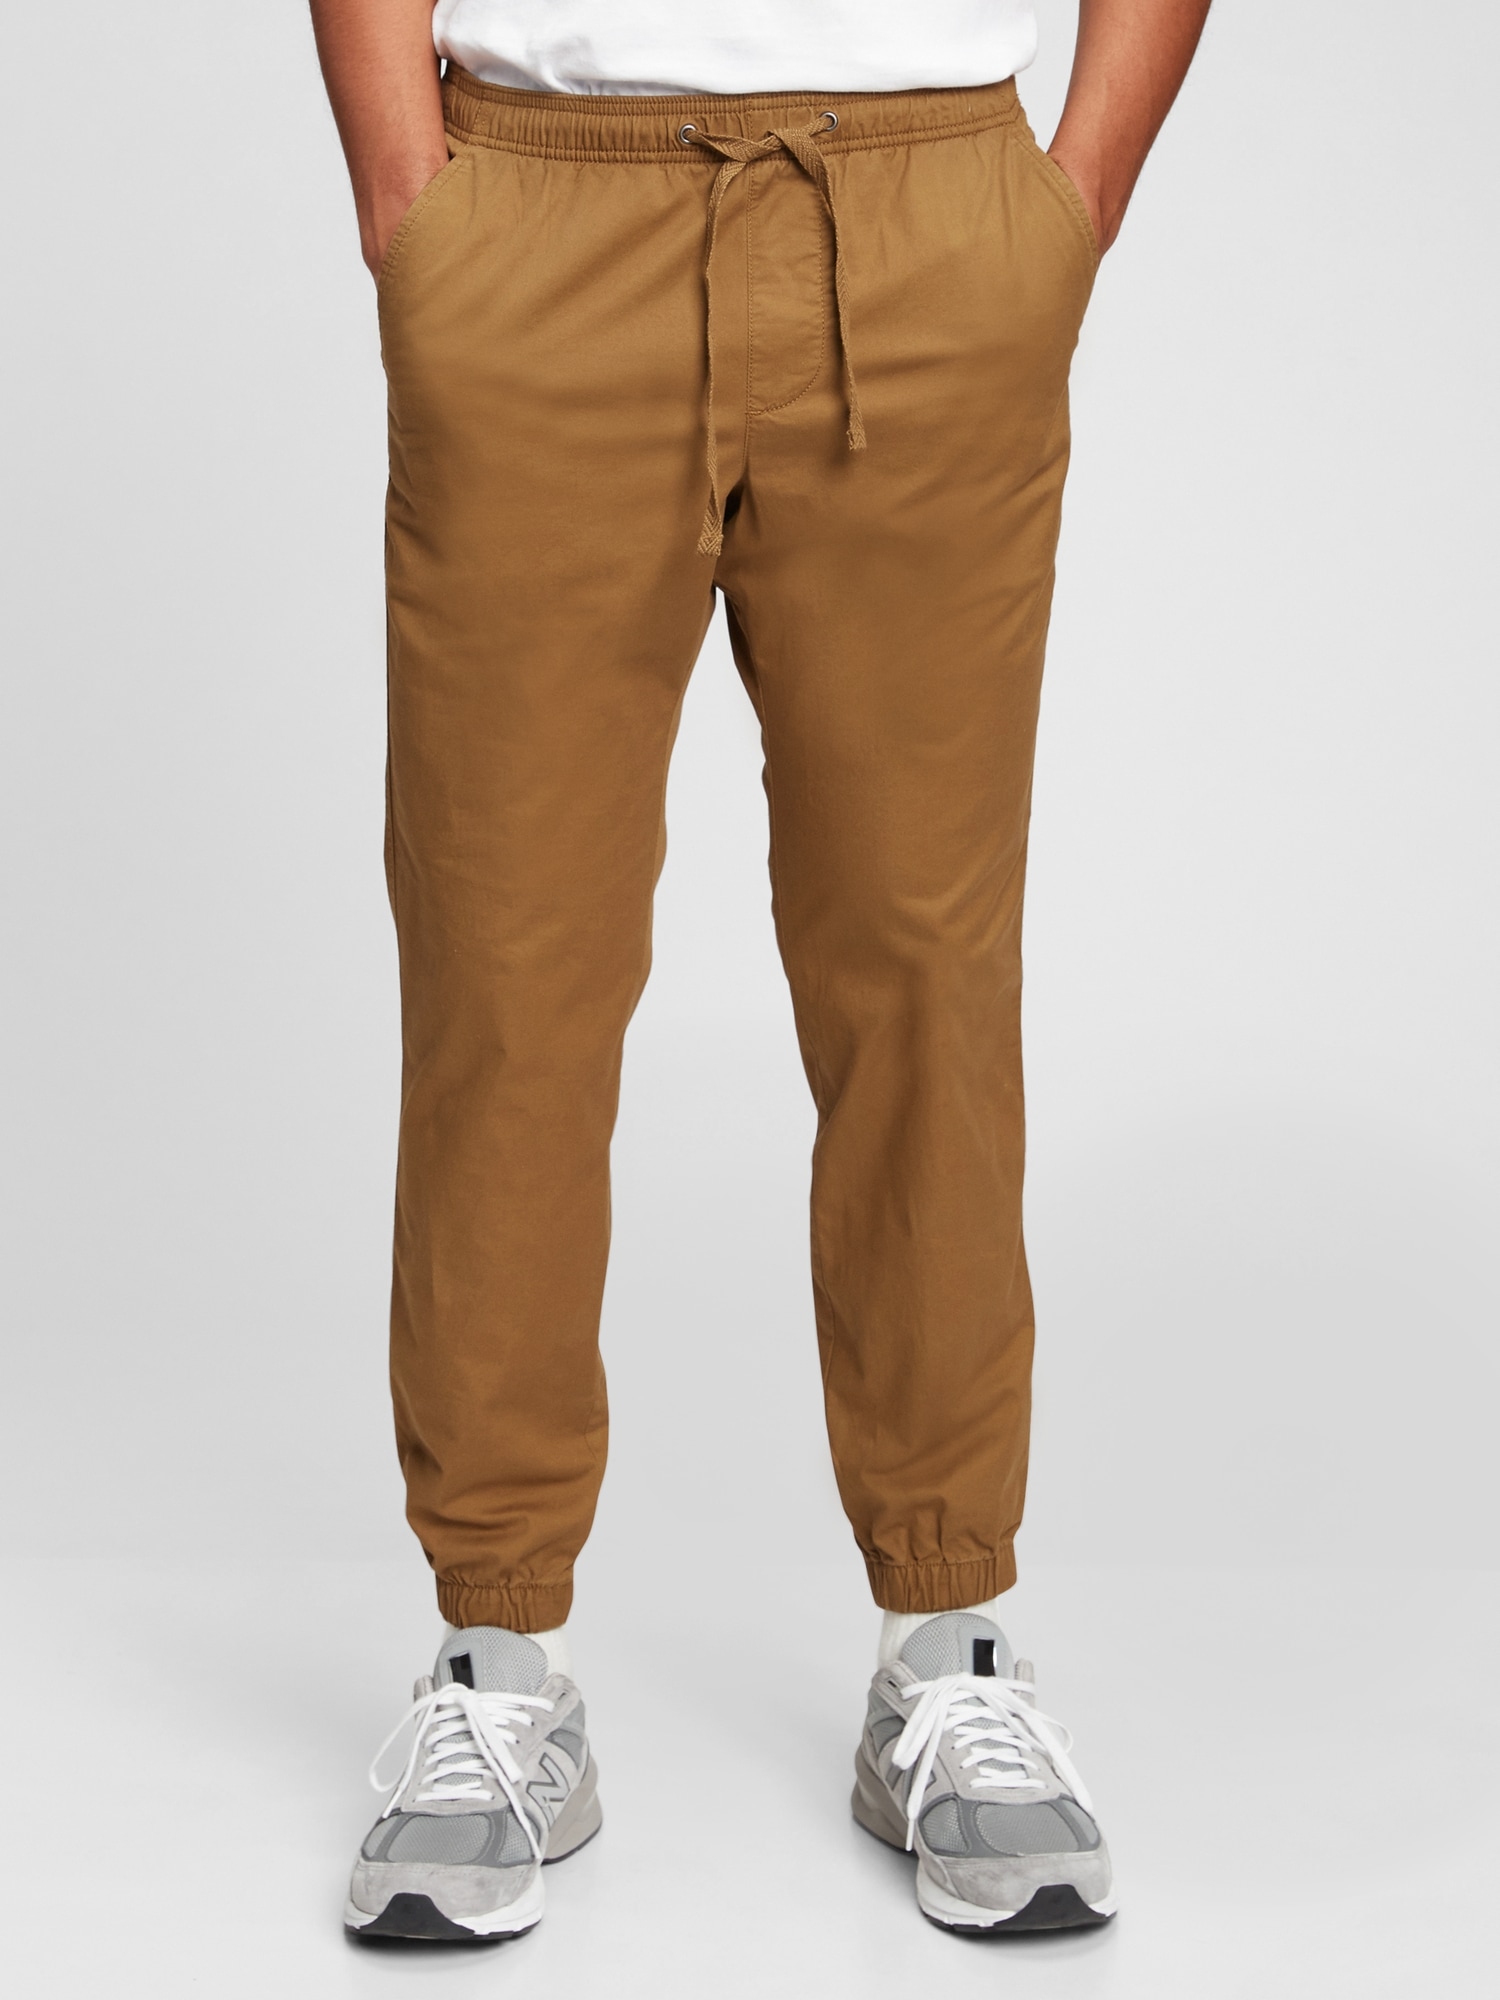 Gap Men Trousers - Buy Gap Men Trousers online in India